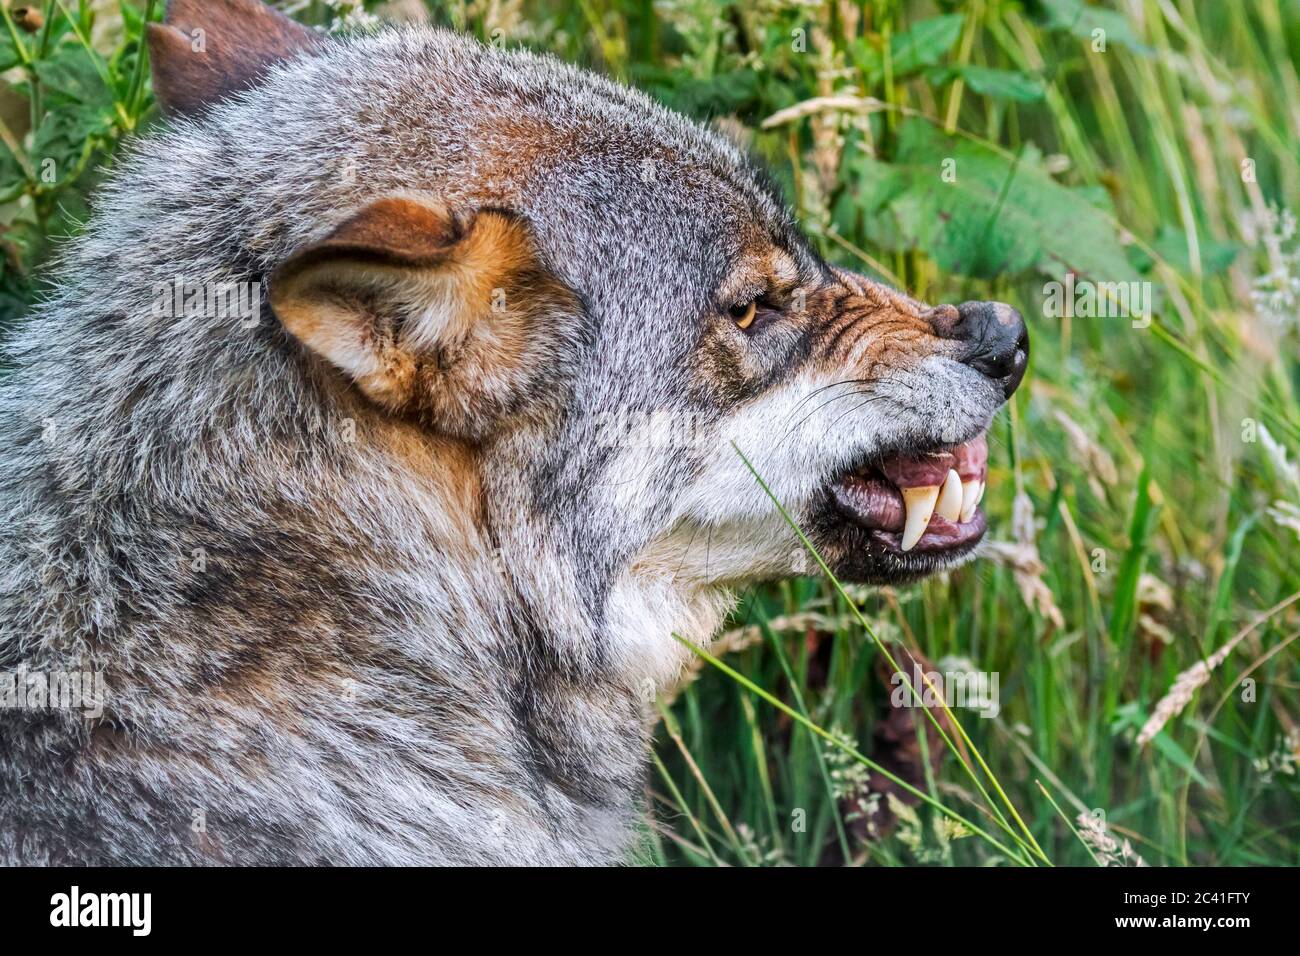 Lupo arrabbiato, aggressivo e minacciato (Canis lupus) che mostra il naso rugoso e l'allevamento dei suoi grappi quando il membro del pacchetto vuole rubare il suo cibo Foto Stock